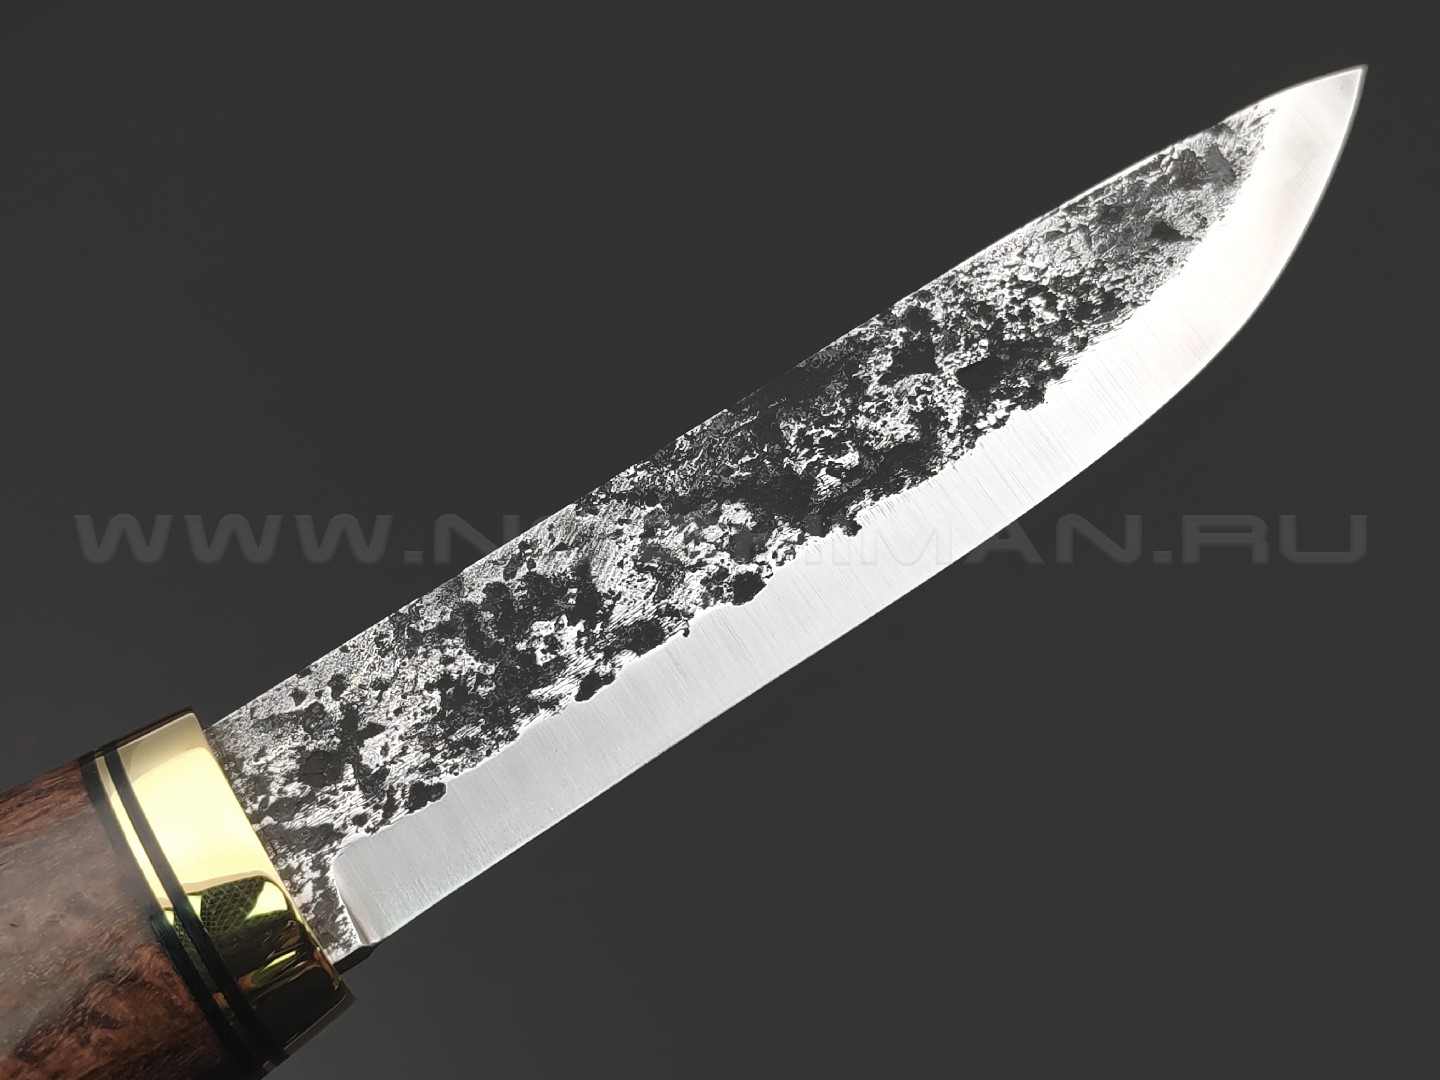 Товарищество Завьялова кованый нож Берси сталь K340, рукоять Стаб. карельская береза коричневая, латунь